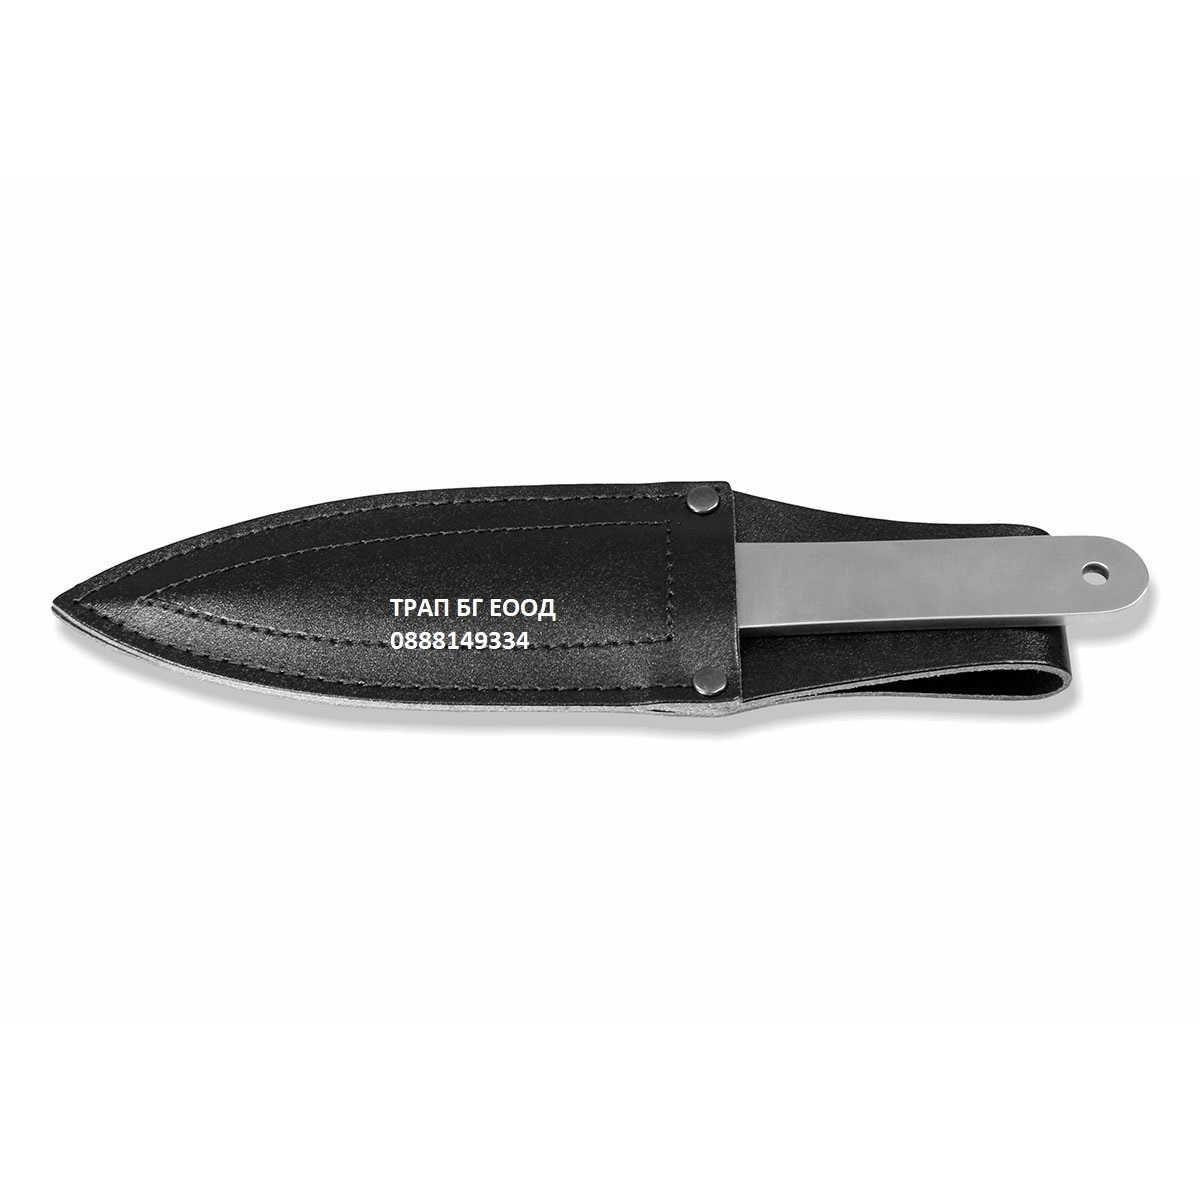 Професионален нож за хвърляне MUELA Muela PRO-80L-14 Испания